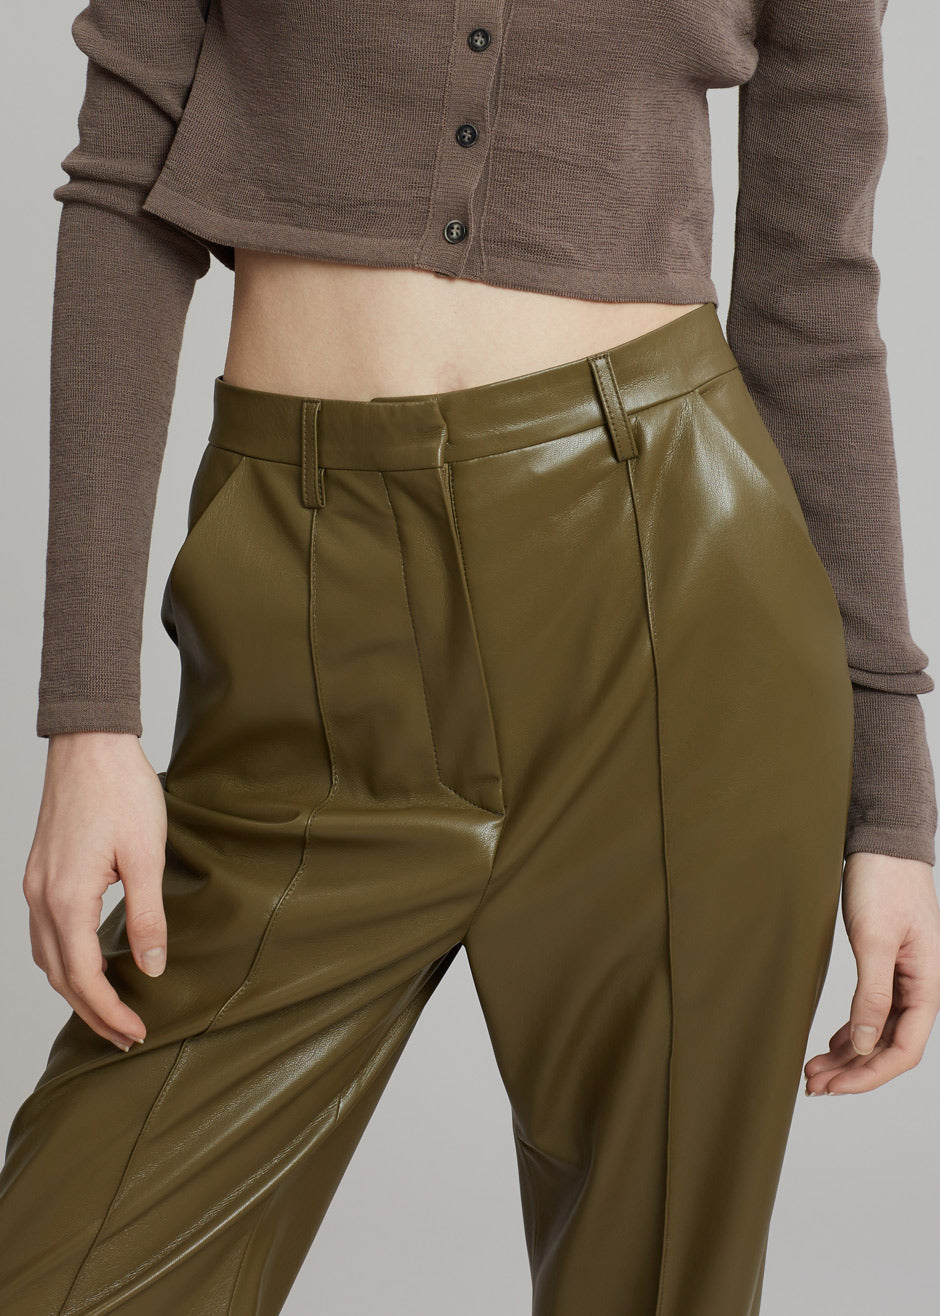 Nanushka Lucee Vegan Leather Pants - Olive - 7